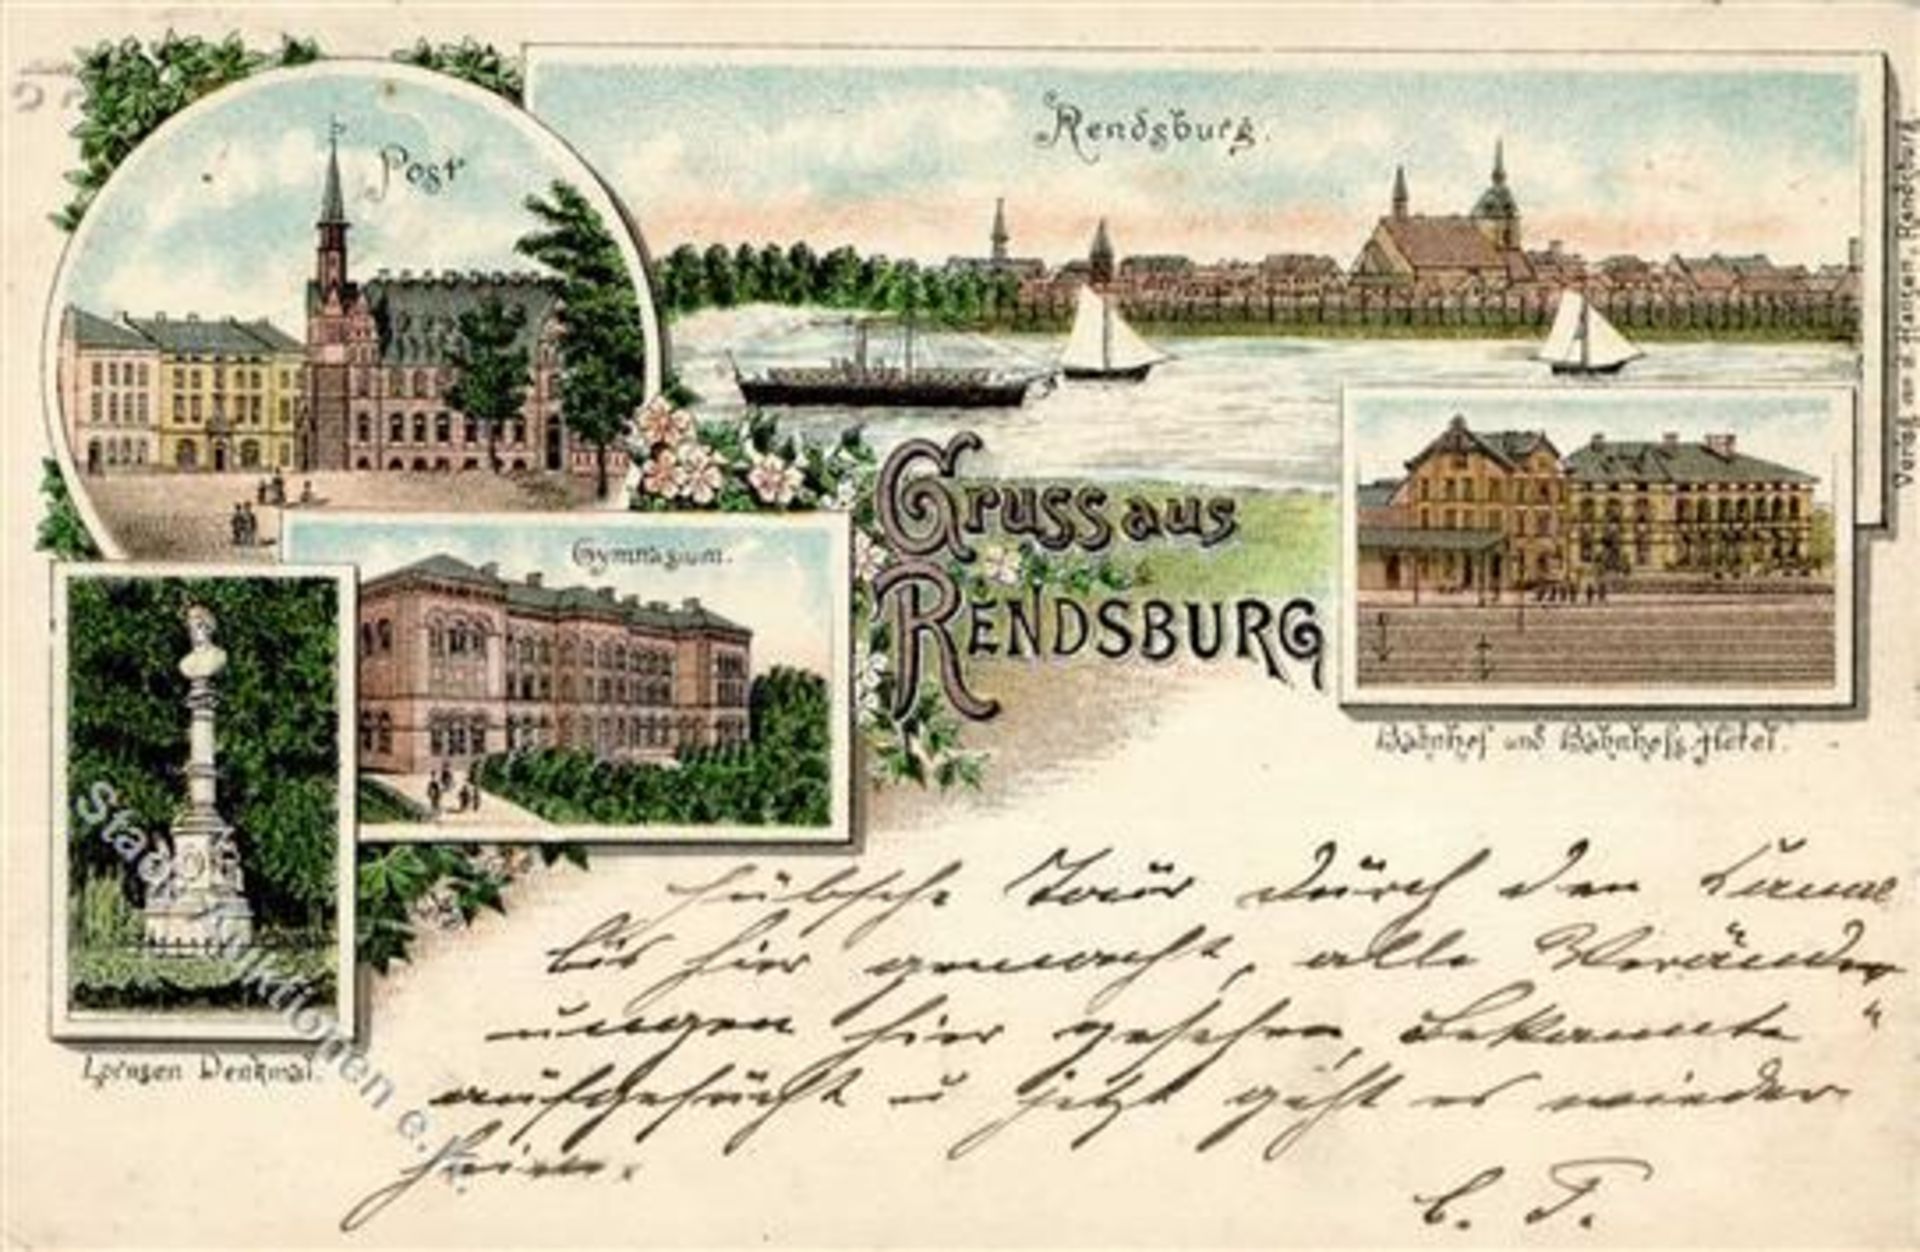 RENDSBURG (2370) - Bahnhof und Bahnhofshotel - 1896! IDieses Los wird in einer online-Auktion ohne